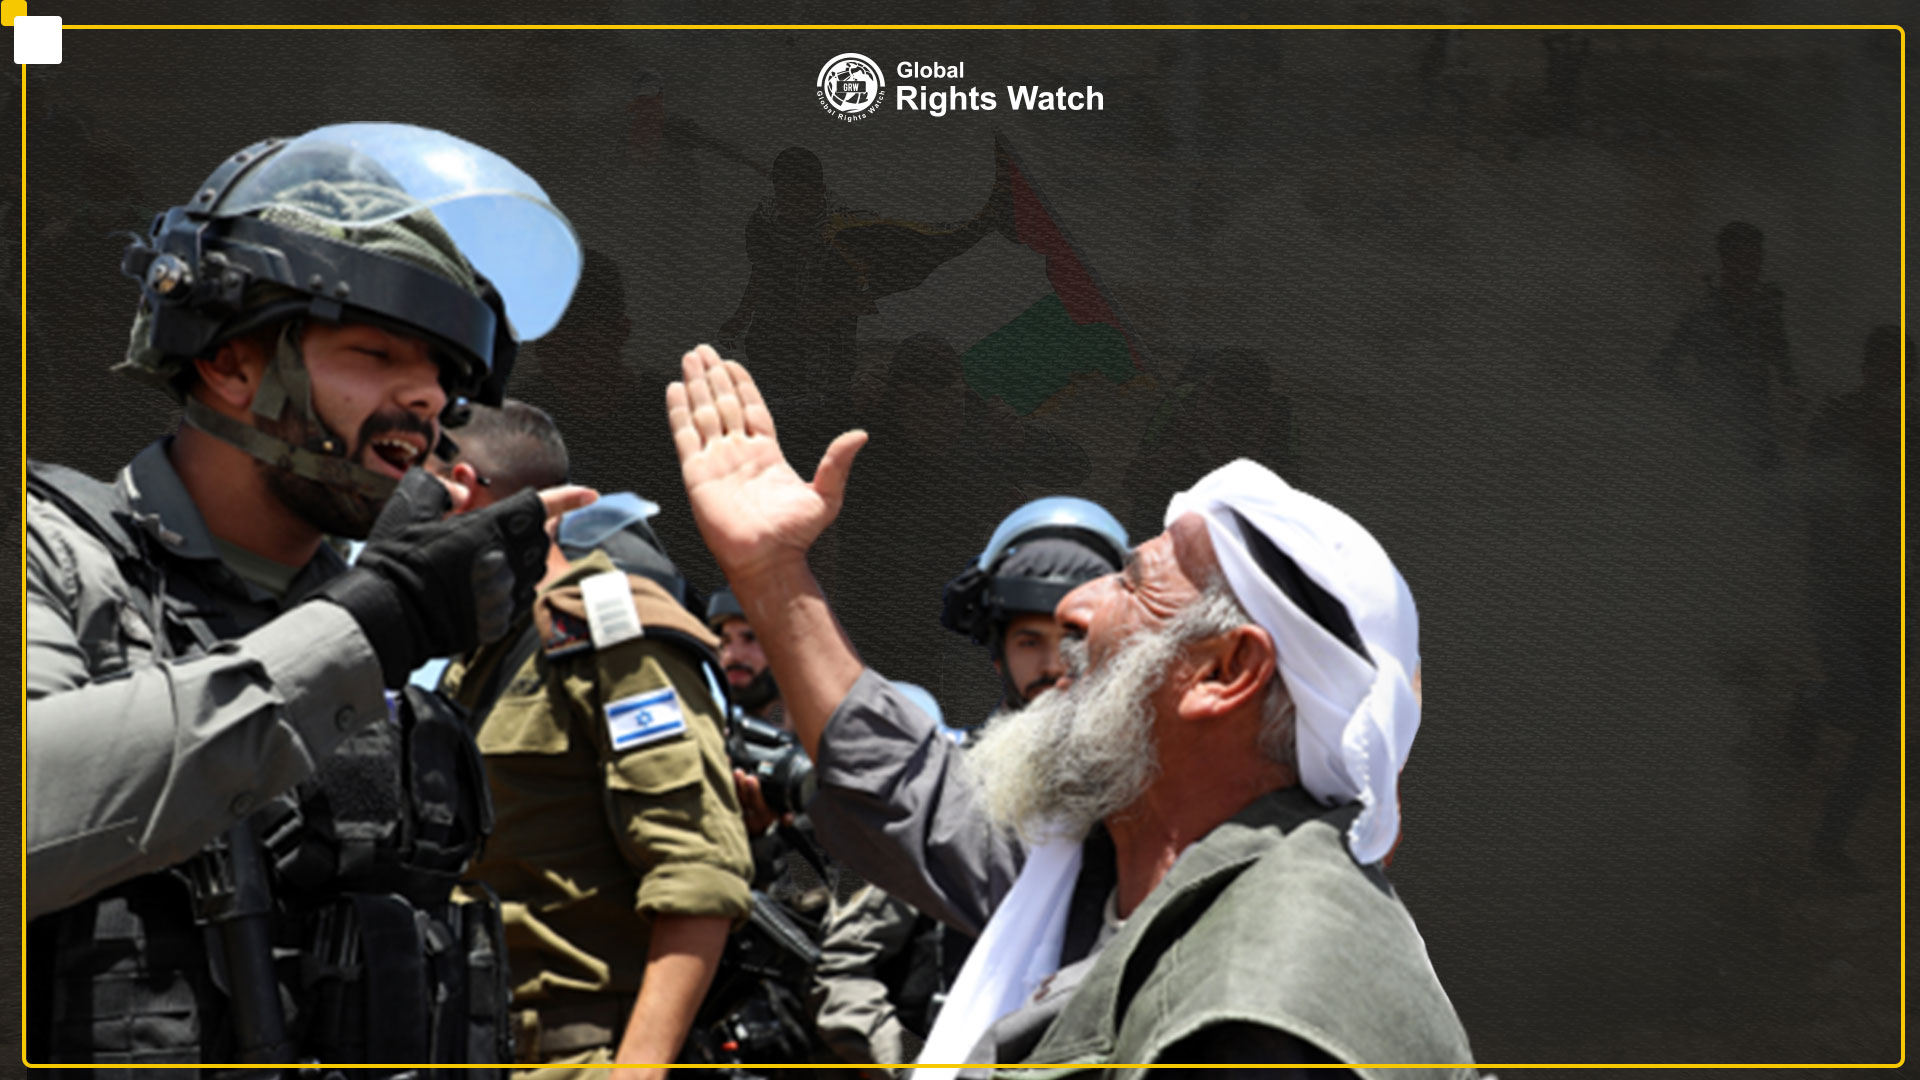 لجنة أممية تقول إن الاحتلال الإسرائيلي غير قانوني بموجب القانون الدولي